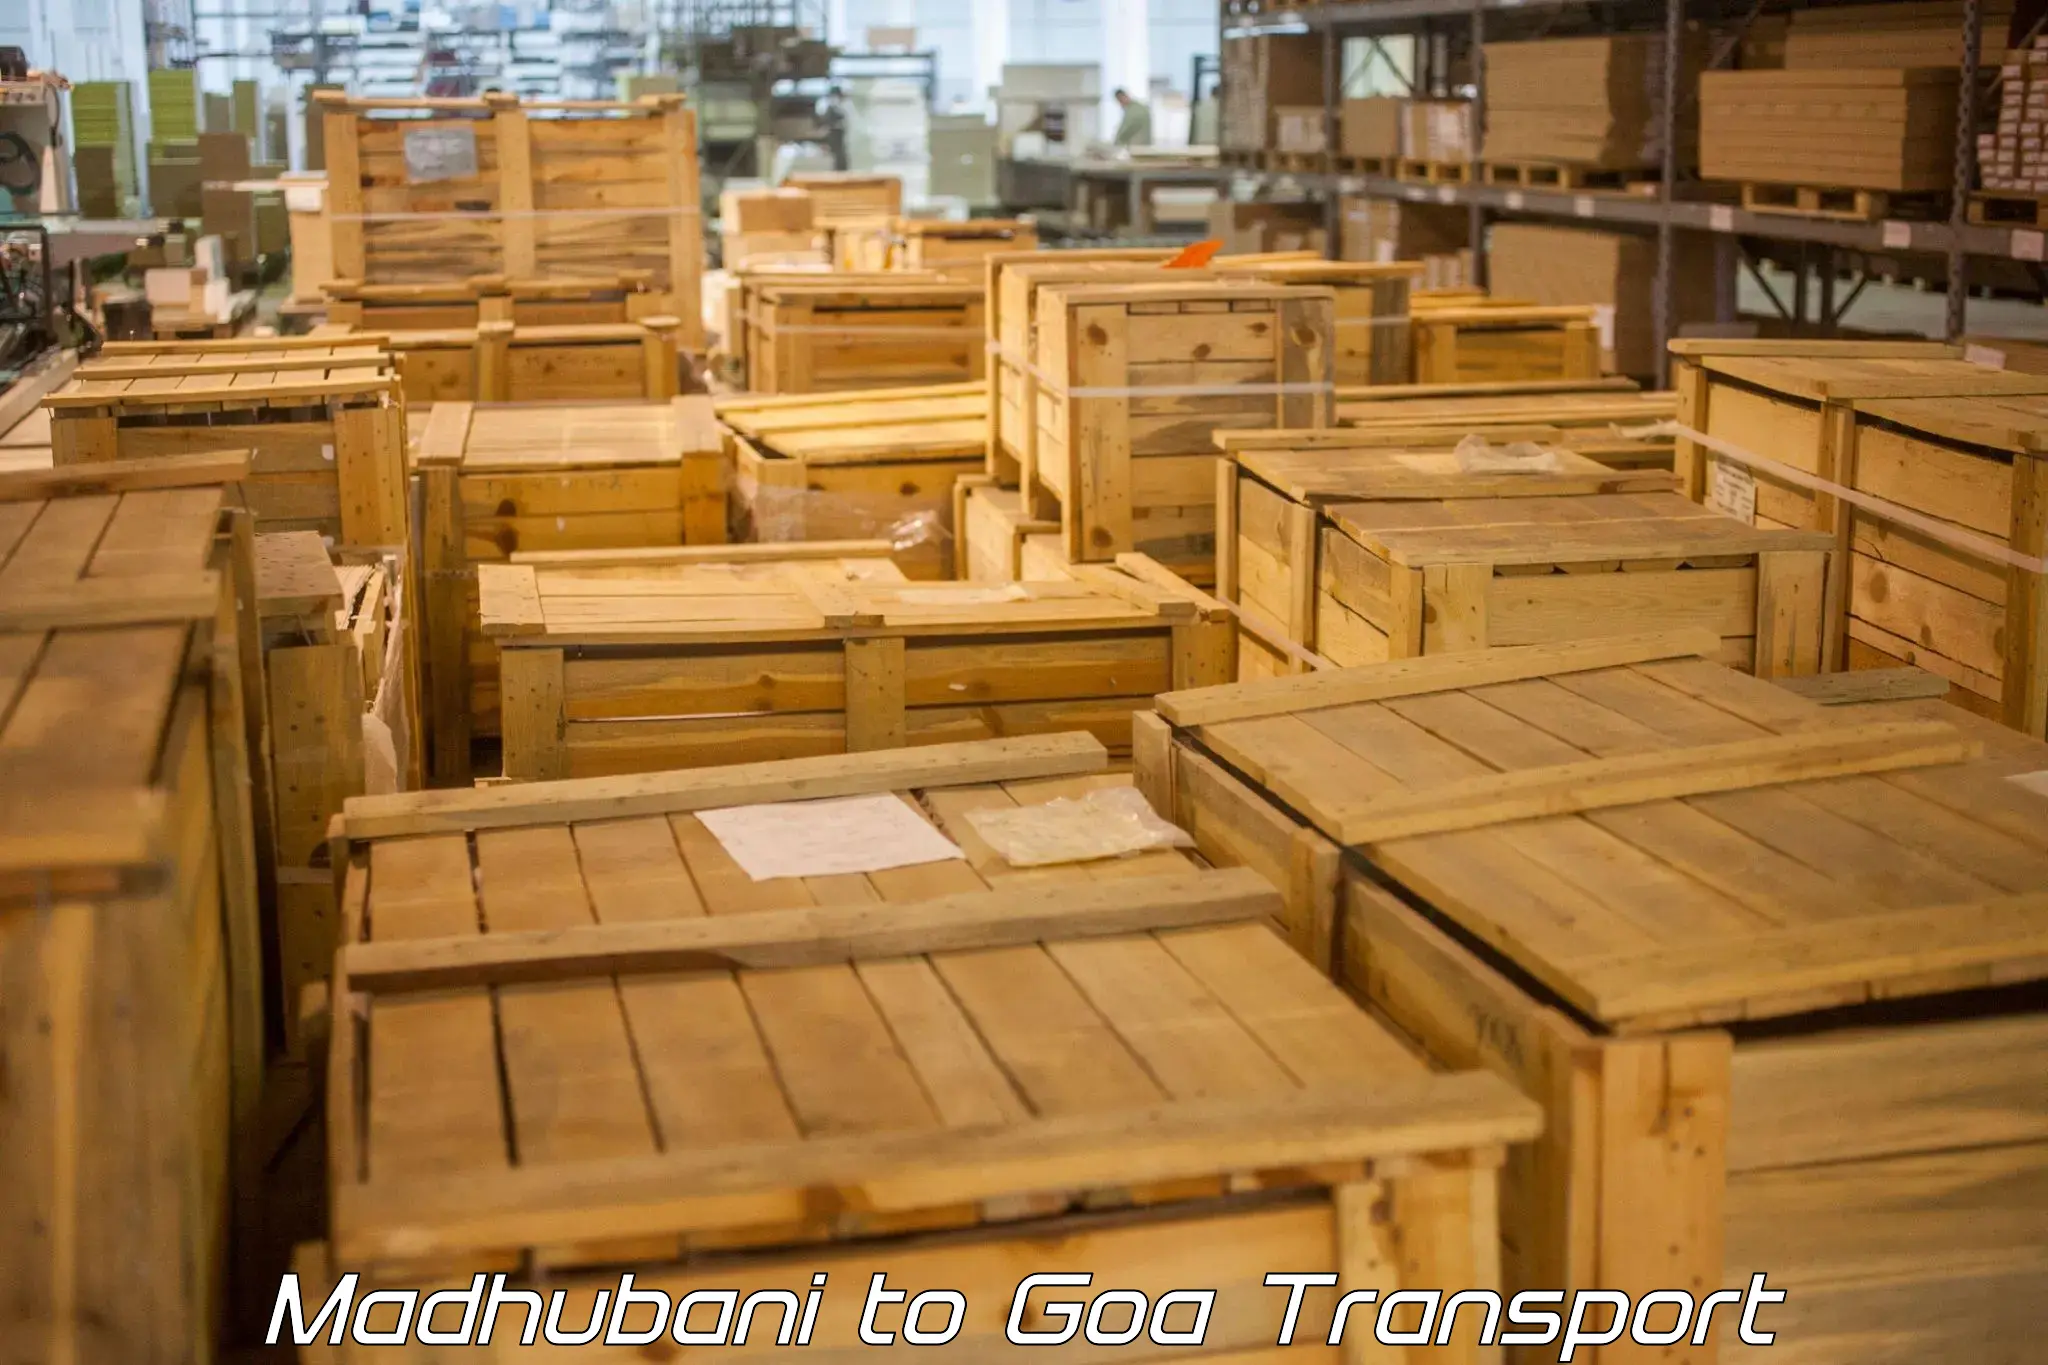 International cargo transportation services Madhubani to IIT Goa